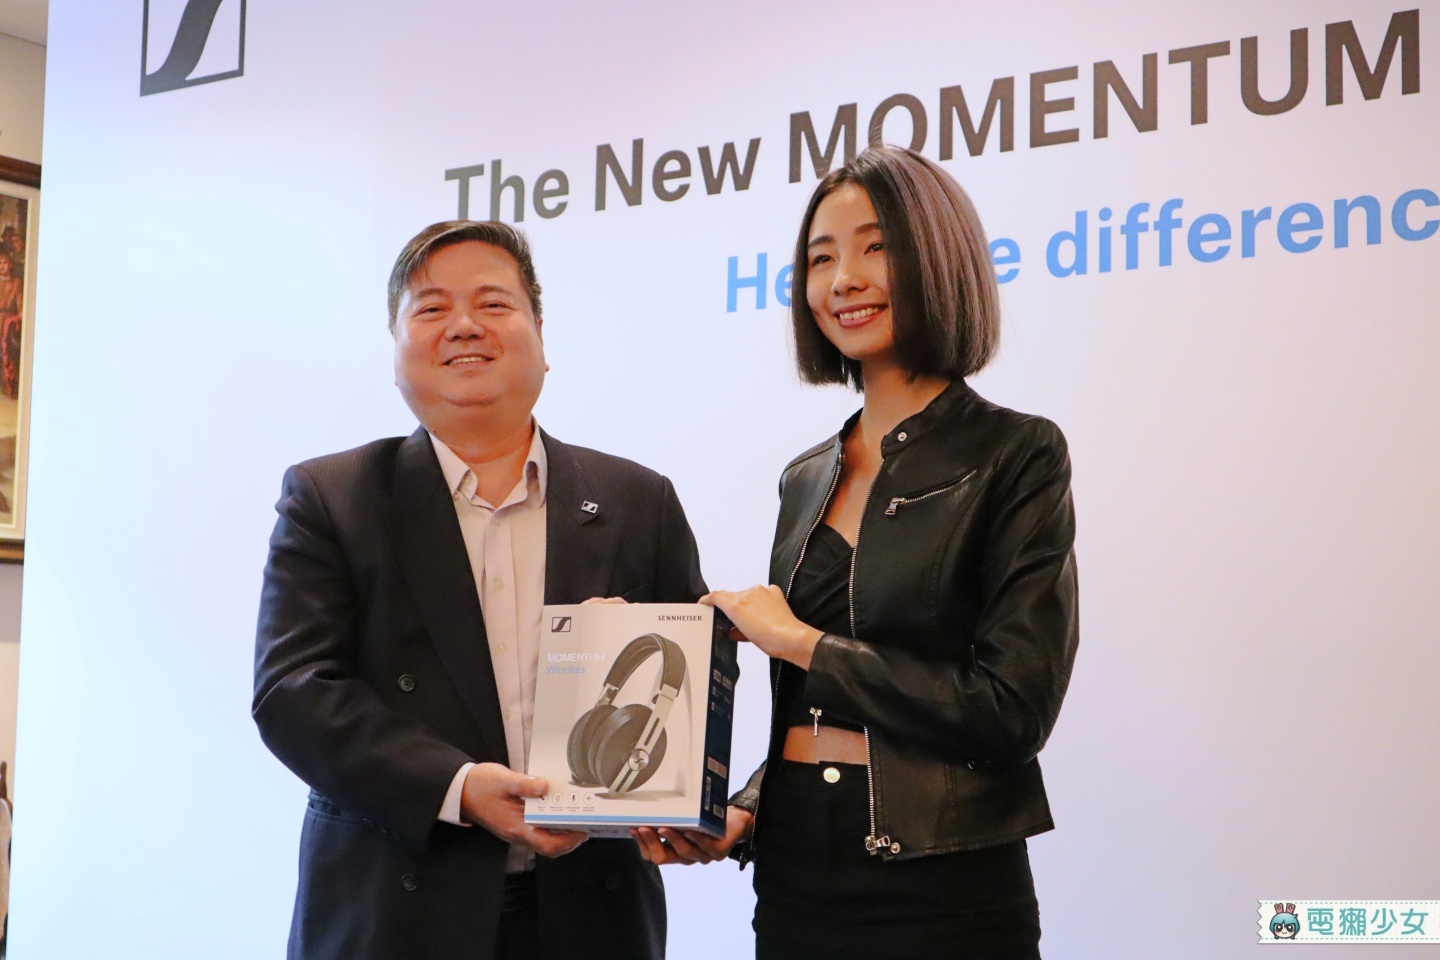 出門｜Sennheiser 推出第三代 MOMENTUM Wireless 主動降噪耳罩式耳機 無線耳機也有好音質